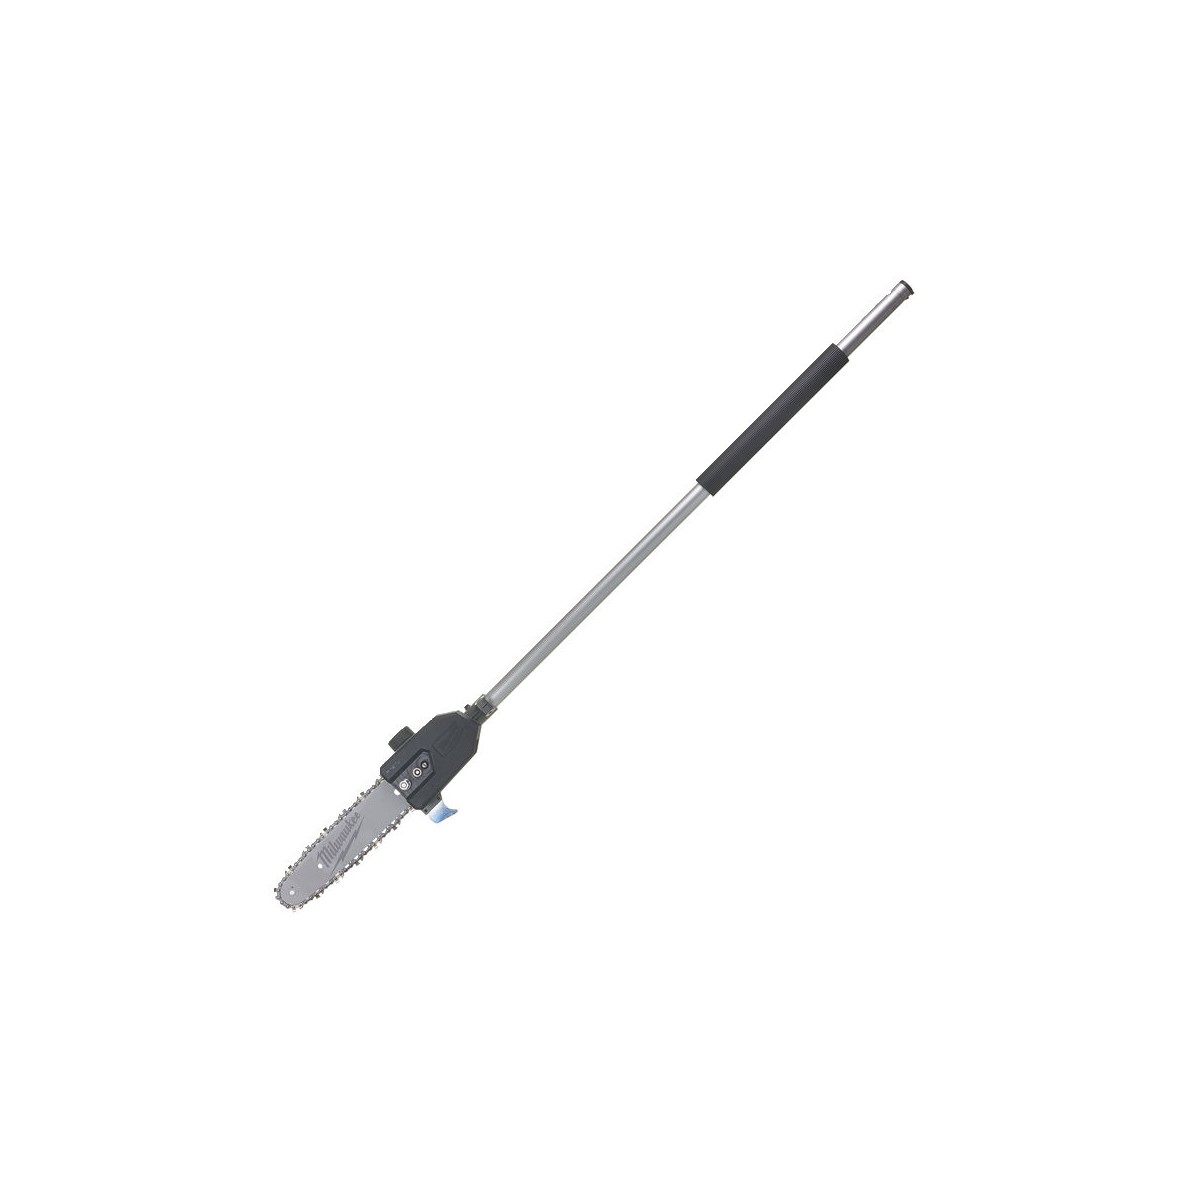 Accesoriu fierastrau cu lant pentru crengi M18 FOPH-CSA QUIK-LOK,  124.5 cm lungime, Milwaukee, cod 4932464957